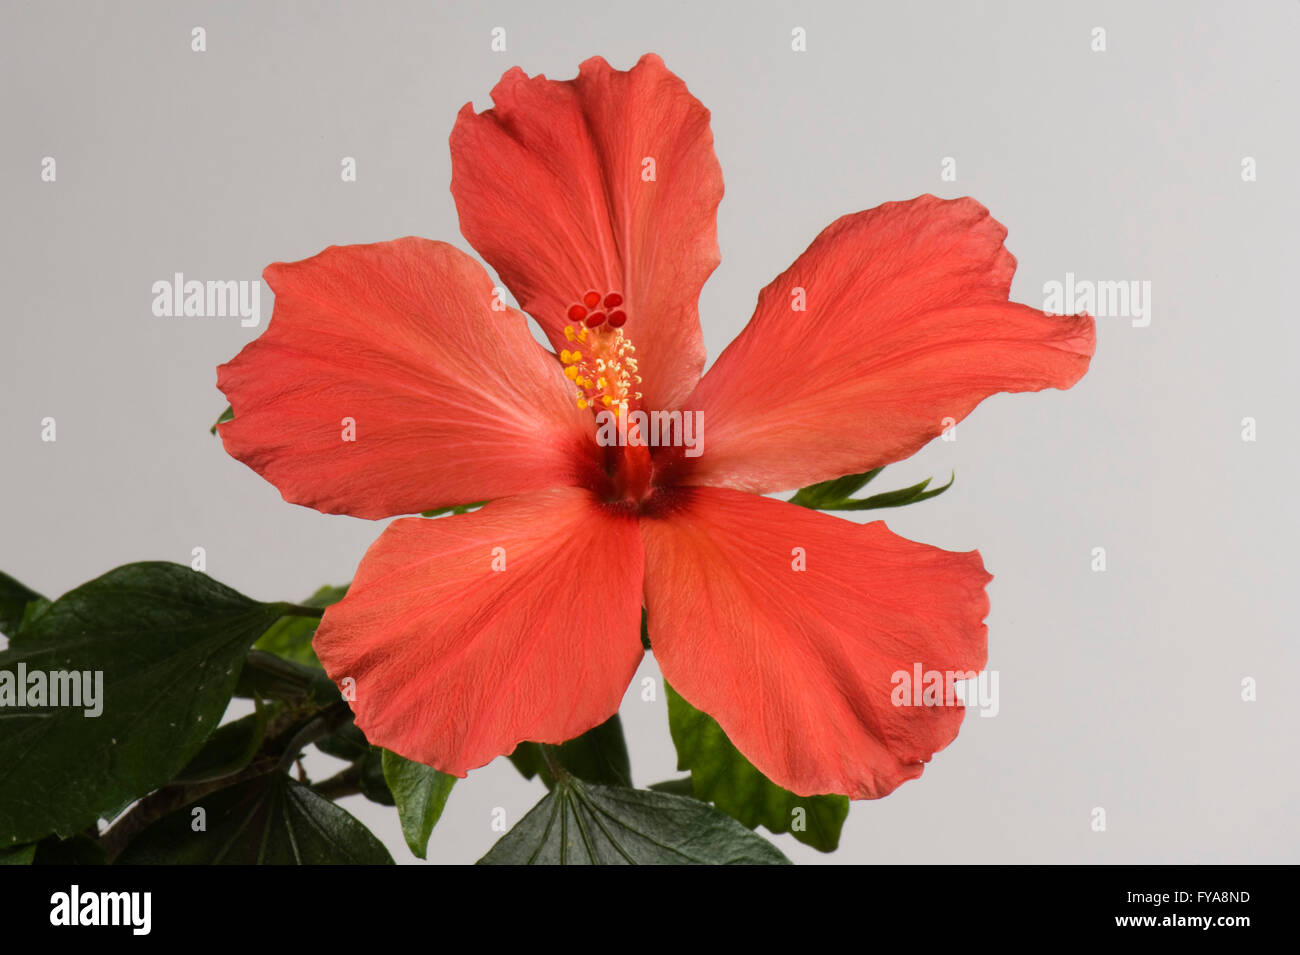 Fiore rosso di un ibisco pianta di casa, Hibiscus rosa-sinensis, mostrante lo stigma e antere Foto Stock